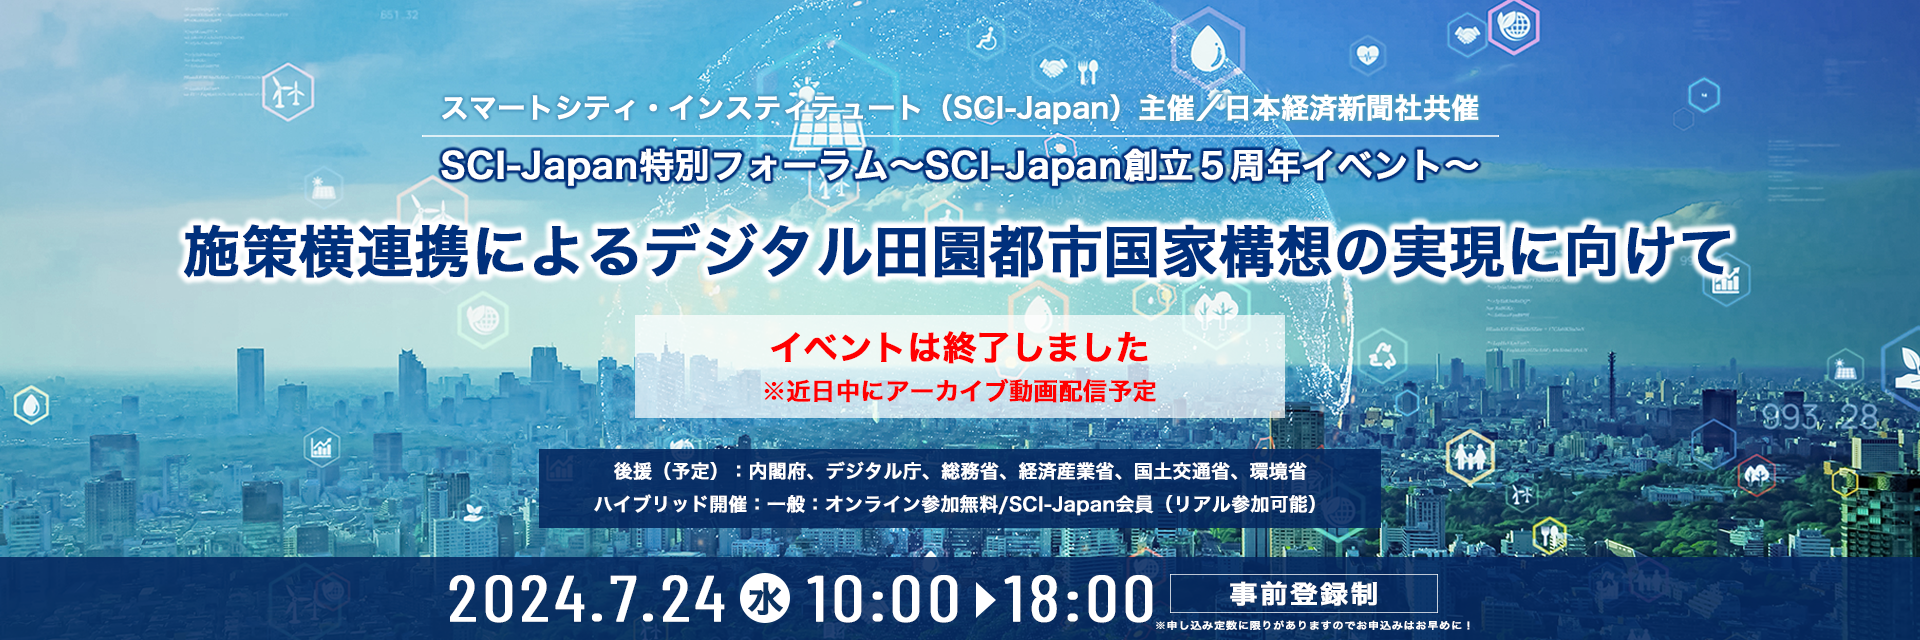 2024特別フォーラム〜SCI-Japan創立5周年イベント〜「施策横連携によるデジタル田園都市国家構想の実現に向けて」